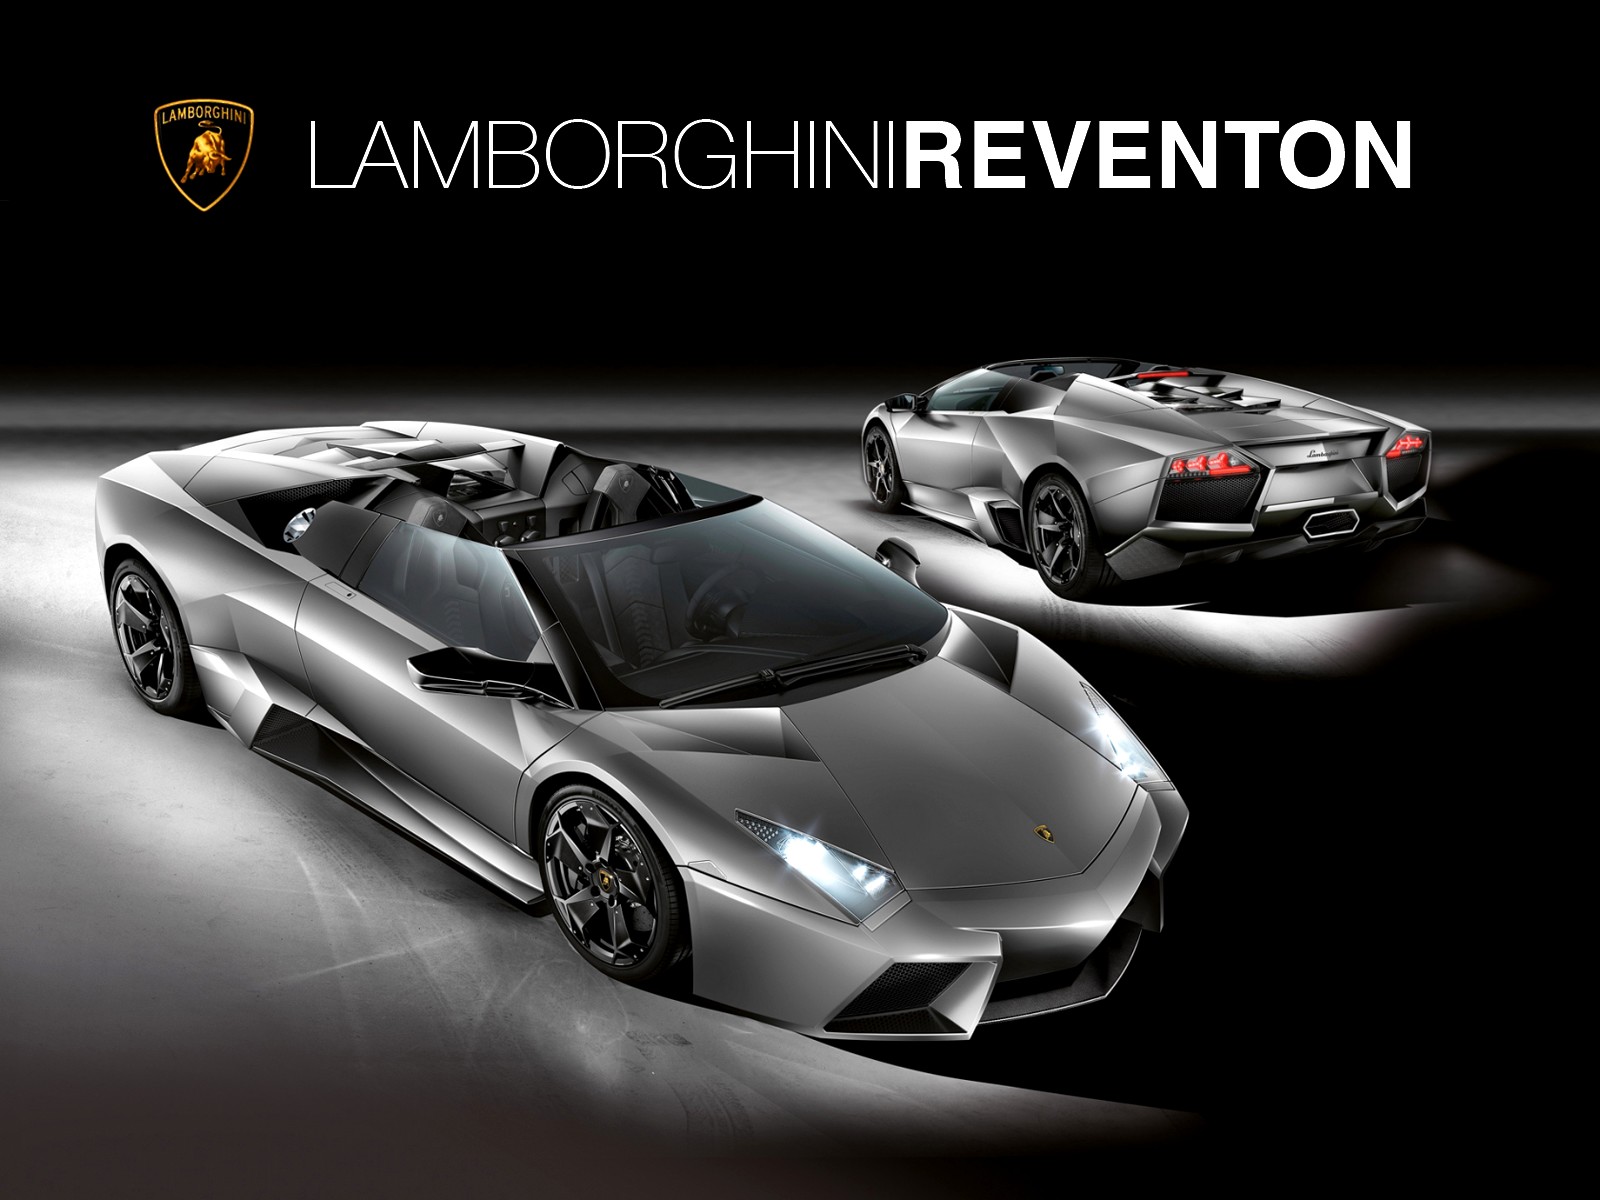 Gallery For Gt Lamborghini Reventon Wallpaper HD